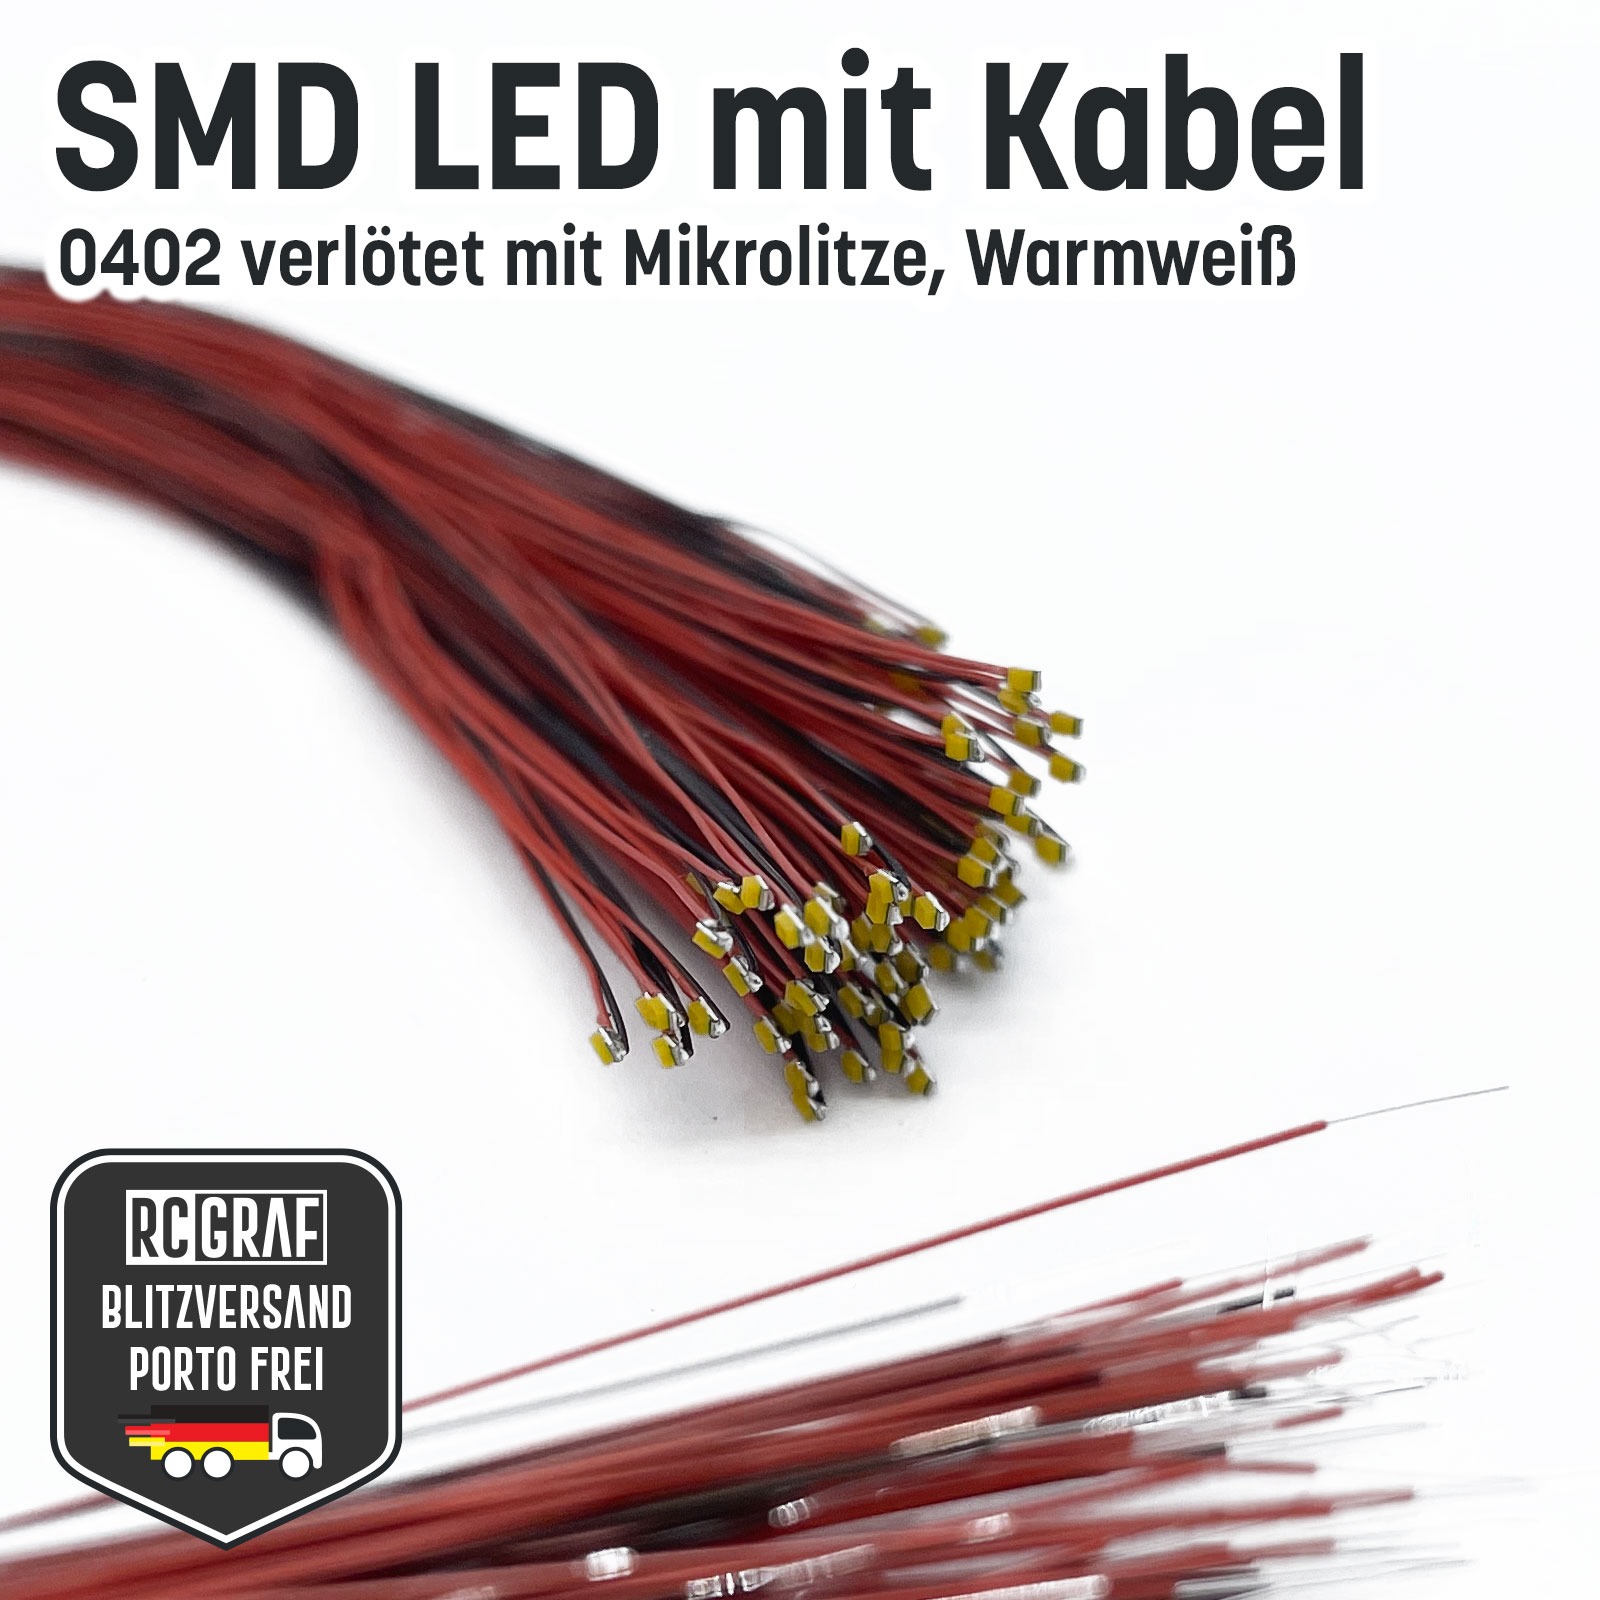 SMD LED 0402 Microlitze 30cm verlötet 8